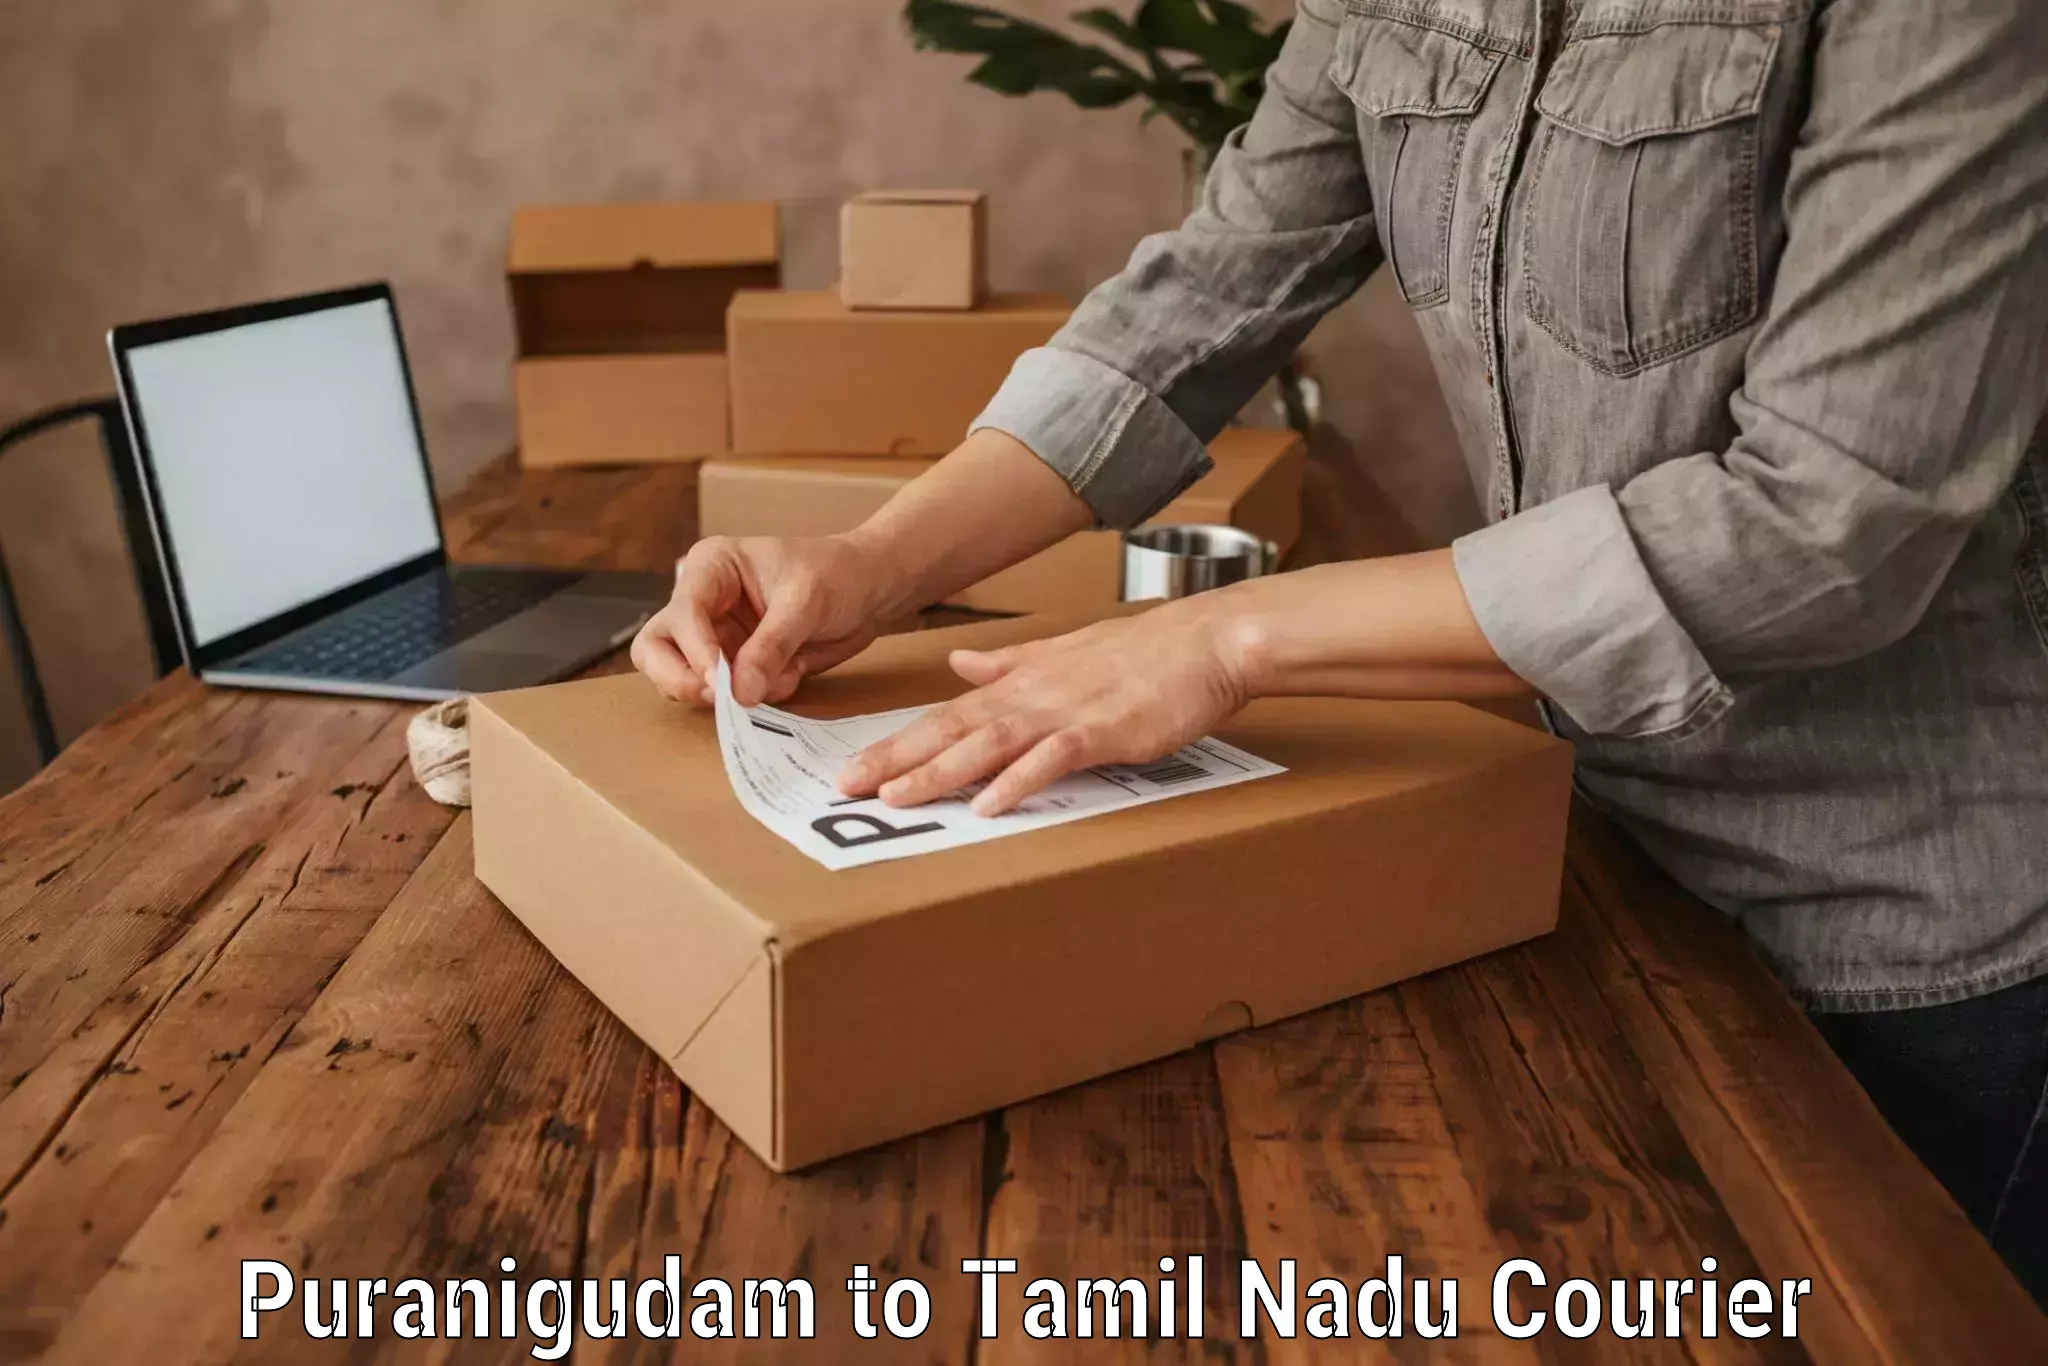 Efficient baggage courier system Puranigudam to Tamil Nadu